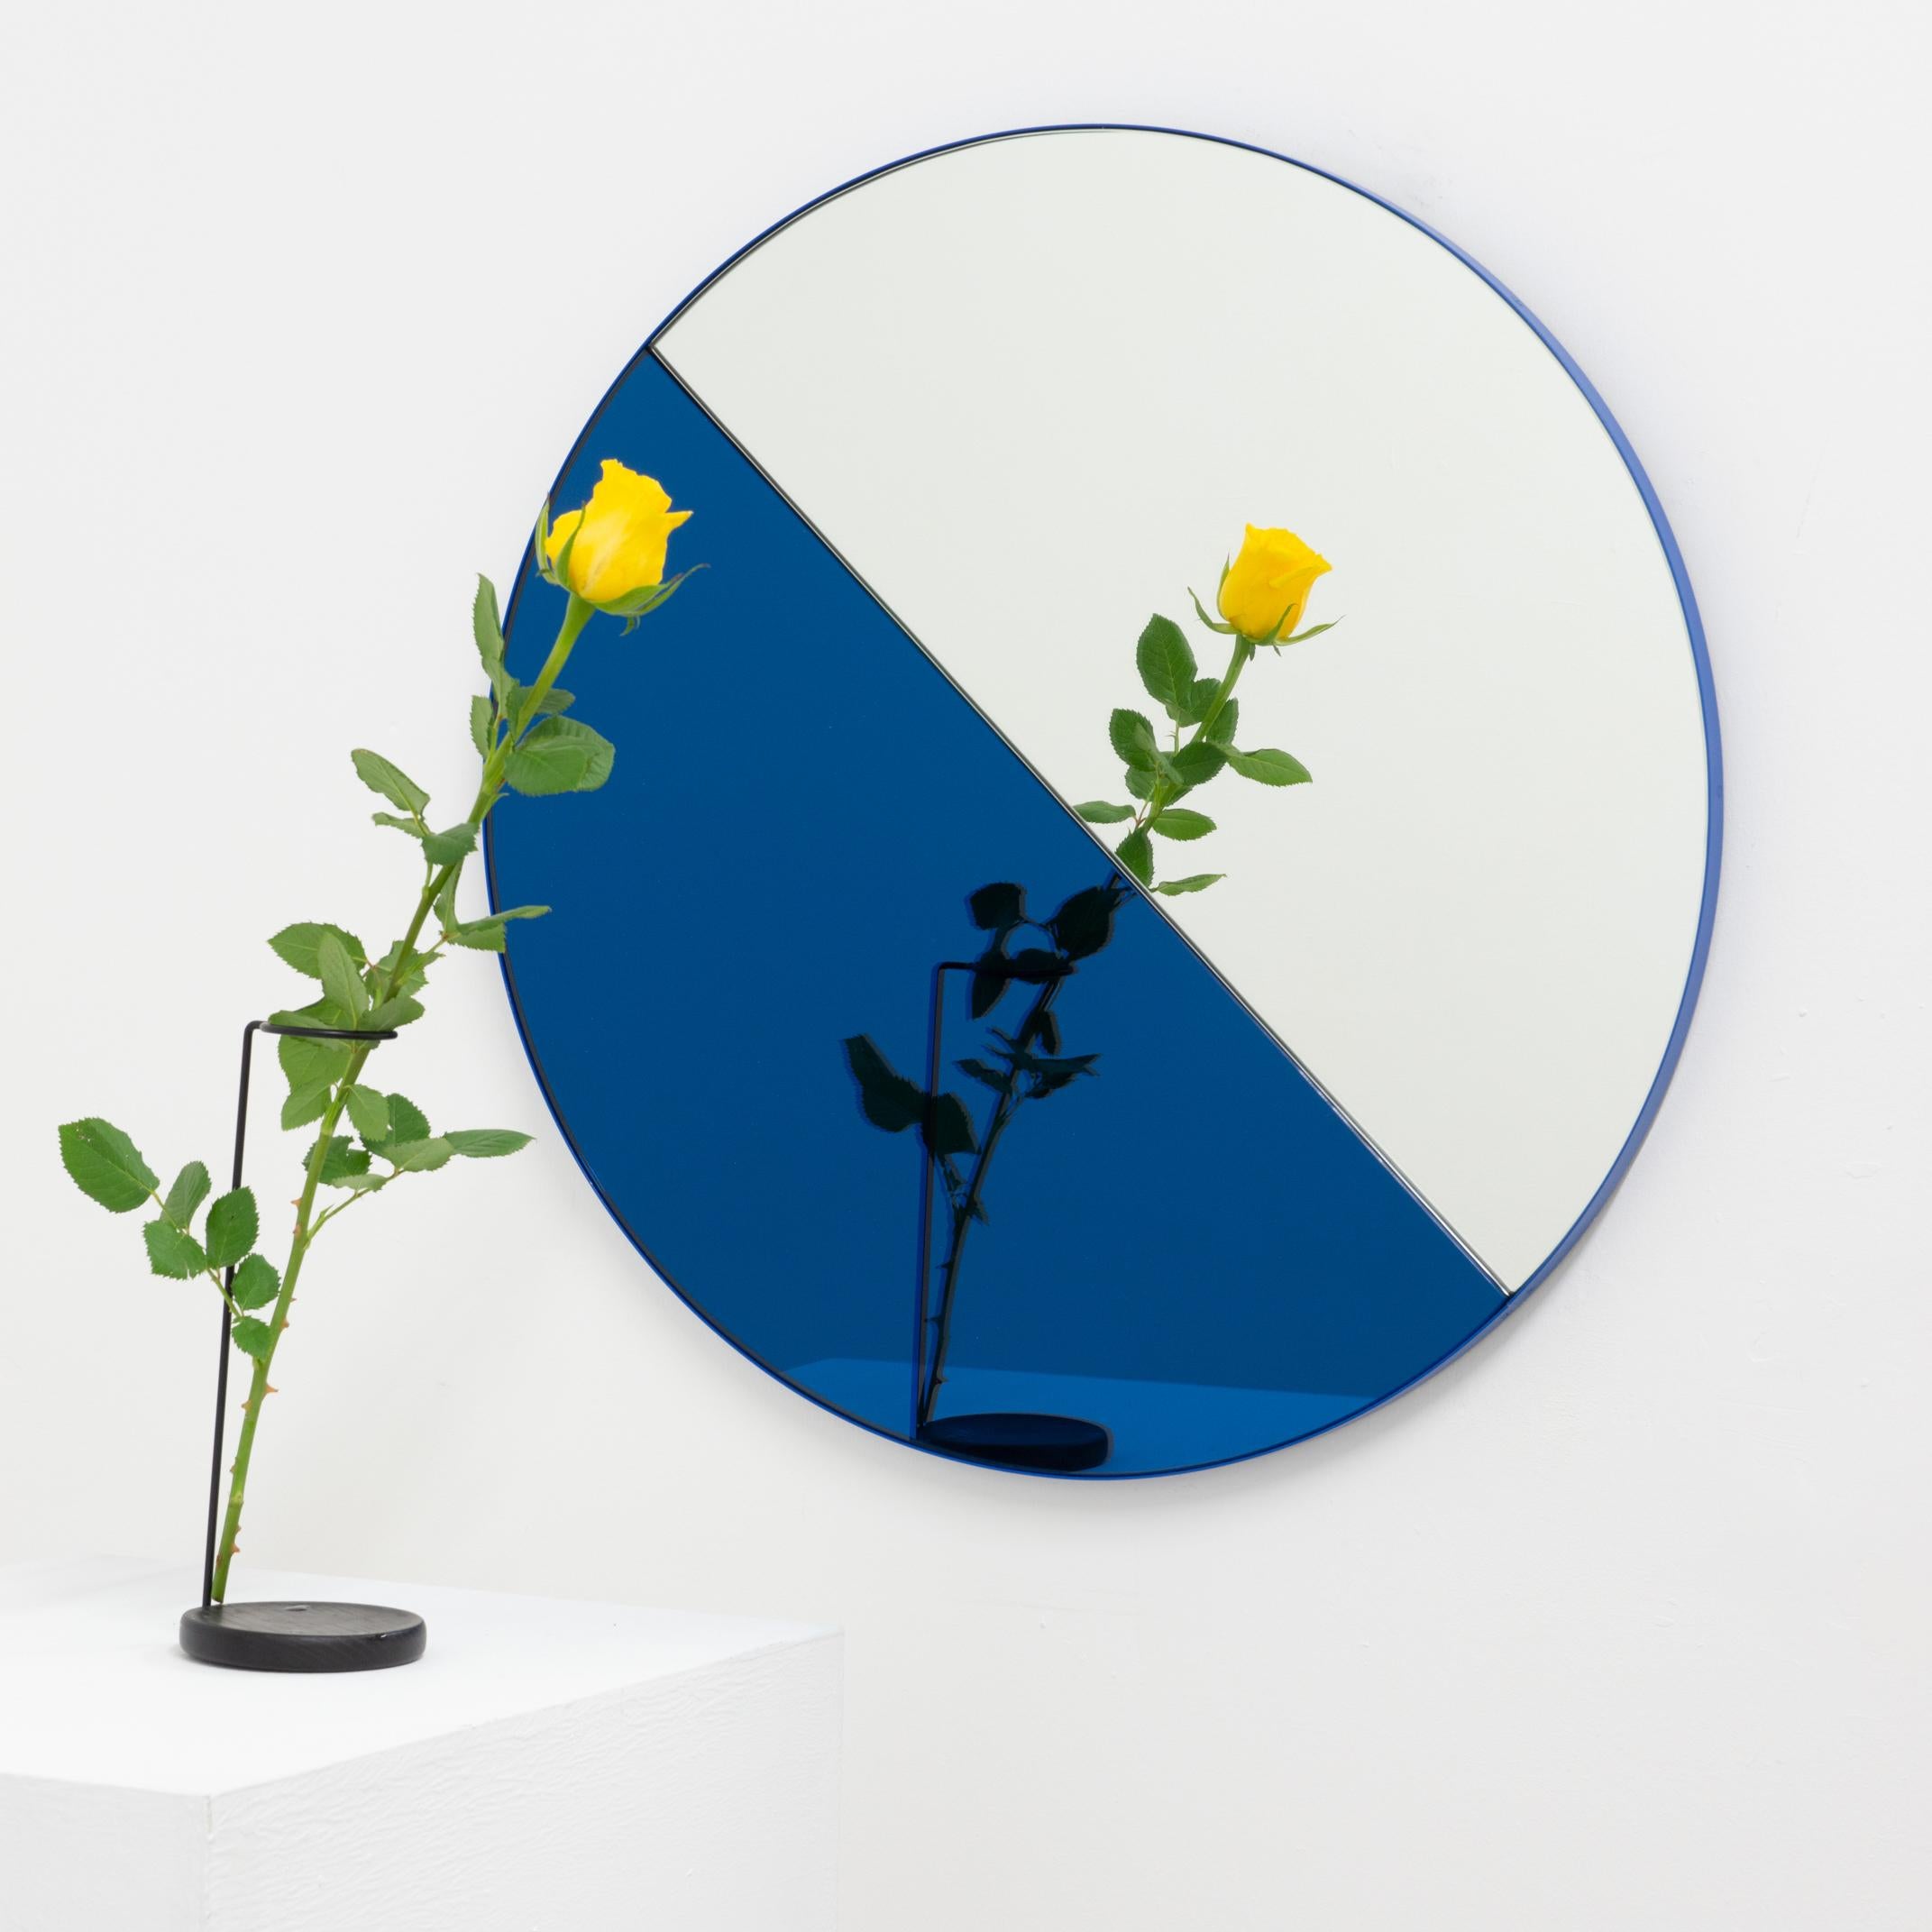 Dualis Orbis, miroir contemporain aux teintes mixtes de bleu et d'argent, avec un cadre en aluminium peint par poudrage en bleu. Conçu et fabriqué à la main à Londres, au Royaume-Uni.

Tous les miroirs sont équipés d'un ingénieux système de tasseaux